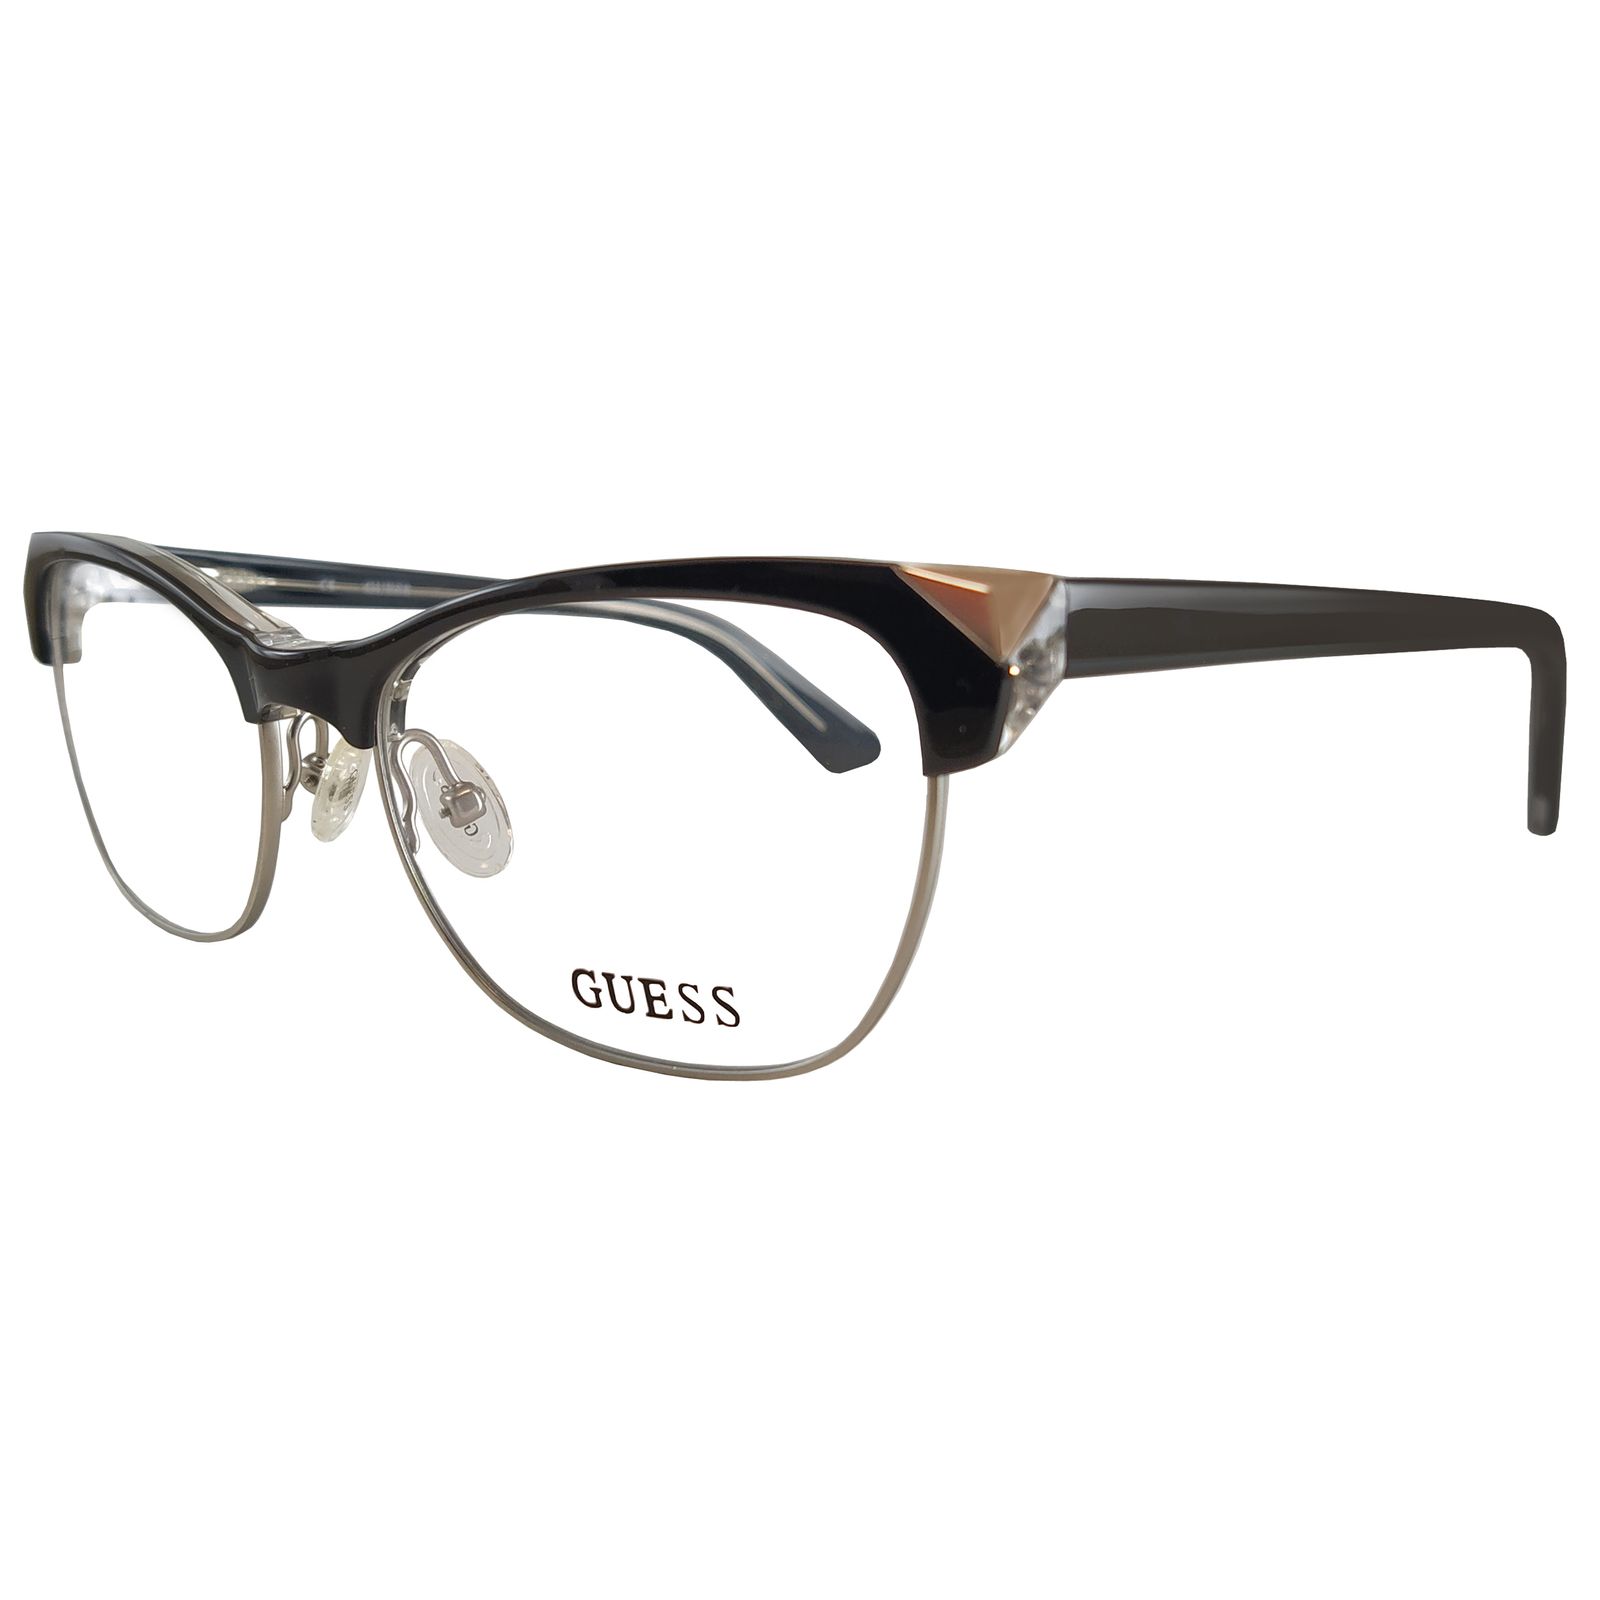 فریم عینک طبی زنانه گس مدل GU249300152 -  - 5